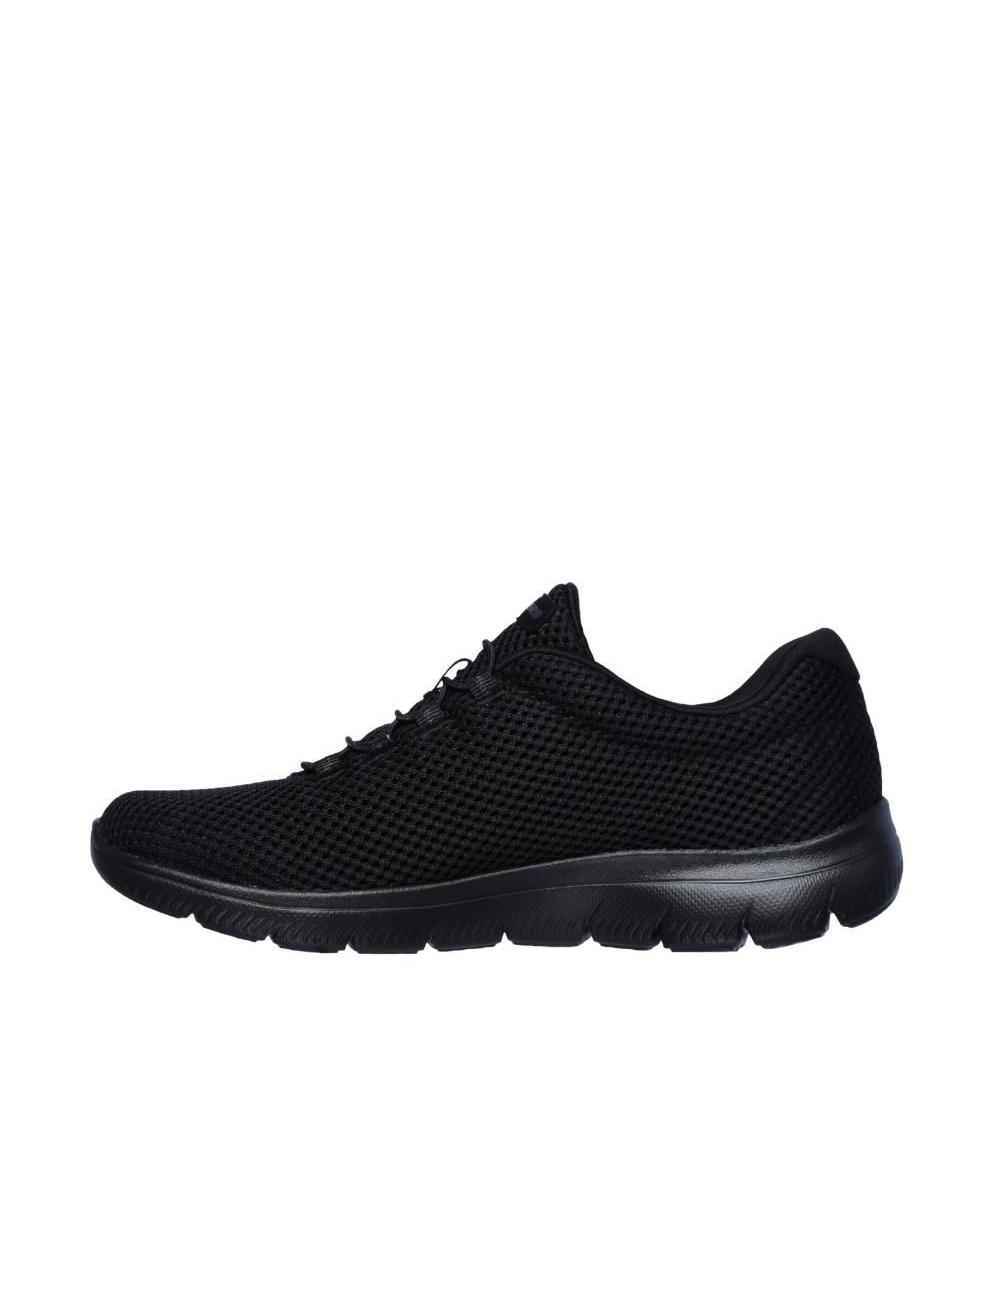 Zapatillas de trabajo de mujer SKECHERS 12985-bbk color negro